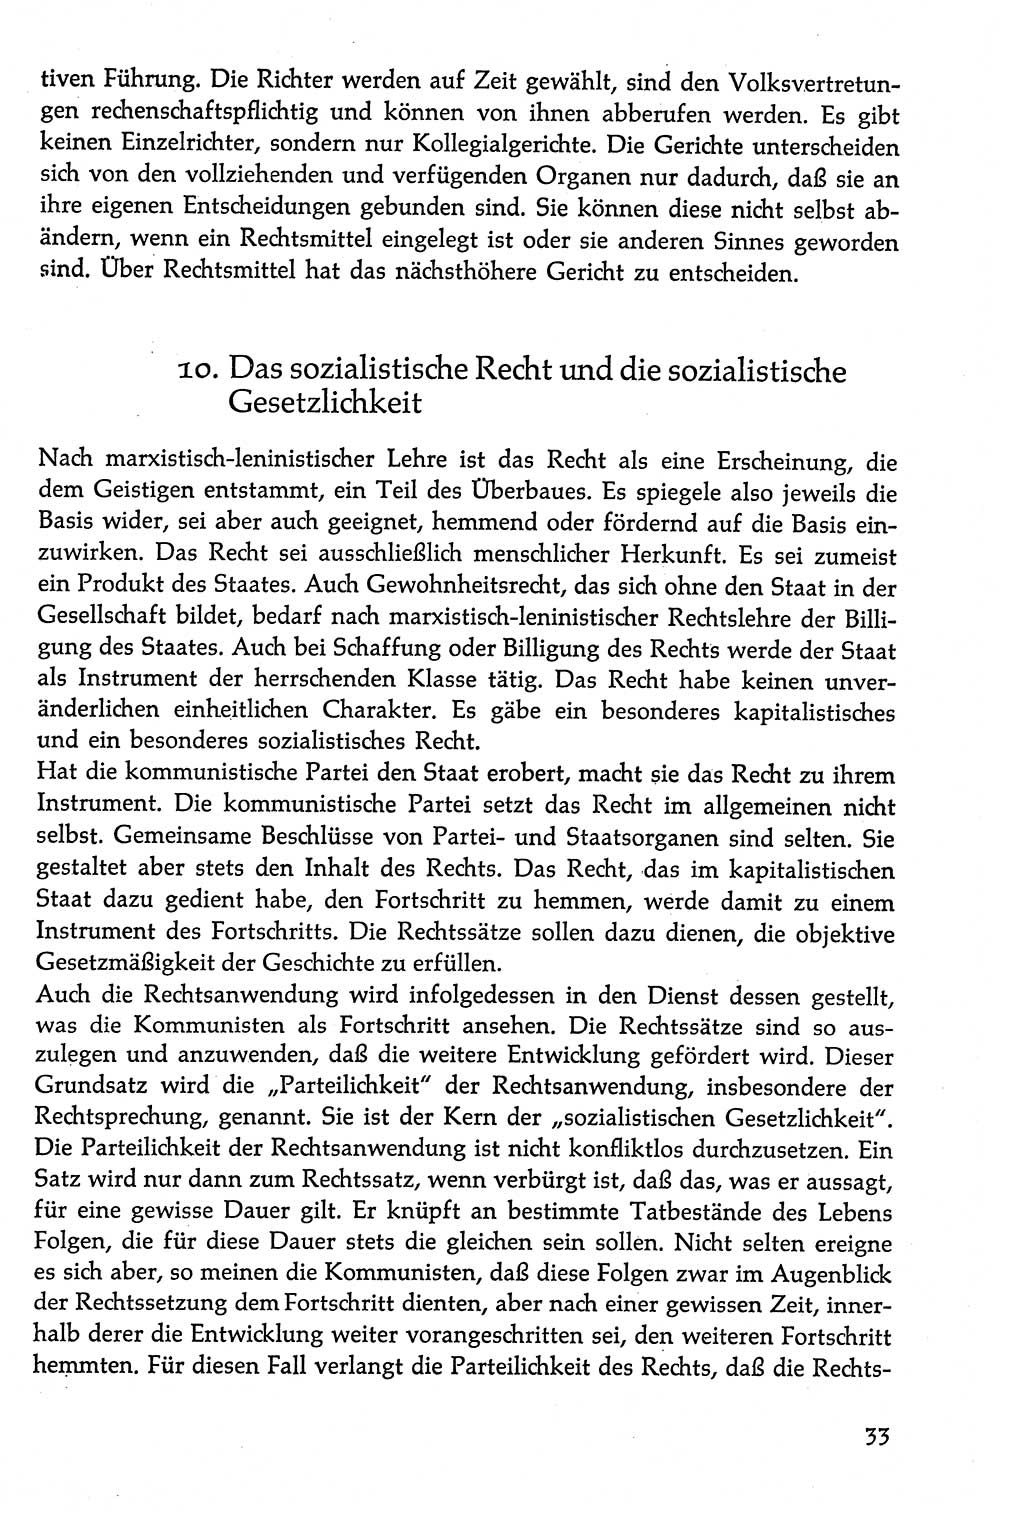 Volksdemokratische Ordnung in Mitteldeutschland [Deutsche Demokratische Republik (DDR)], Texte zur verfassungsrechtlichen Situation 1963, Seite 33 (Volksdem. Ordn. Md. DDR 1963, S. 33)